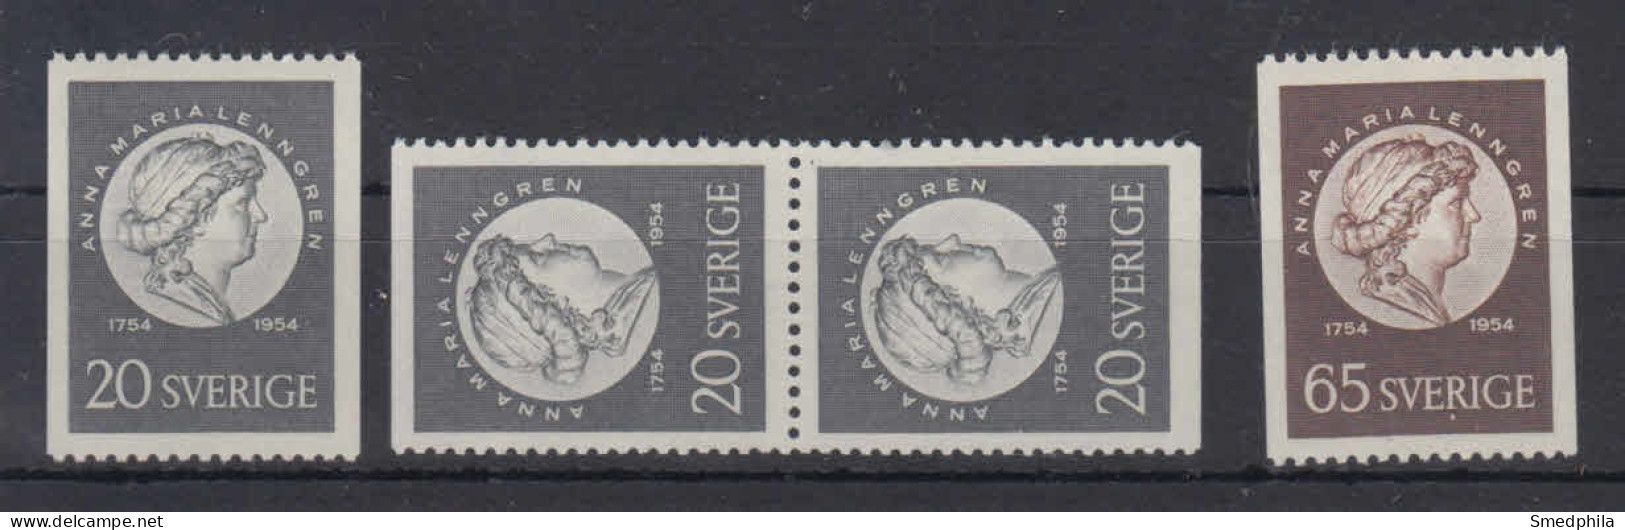 Sweden 1954 - Michel 394-395 MNH ** - Nuevos